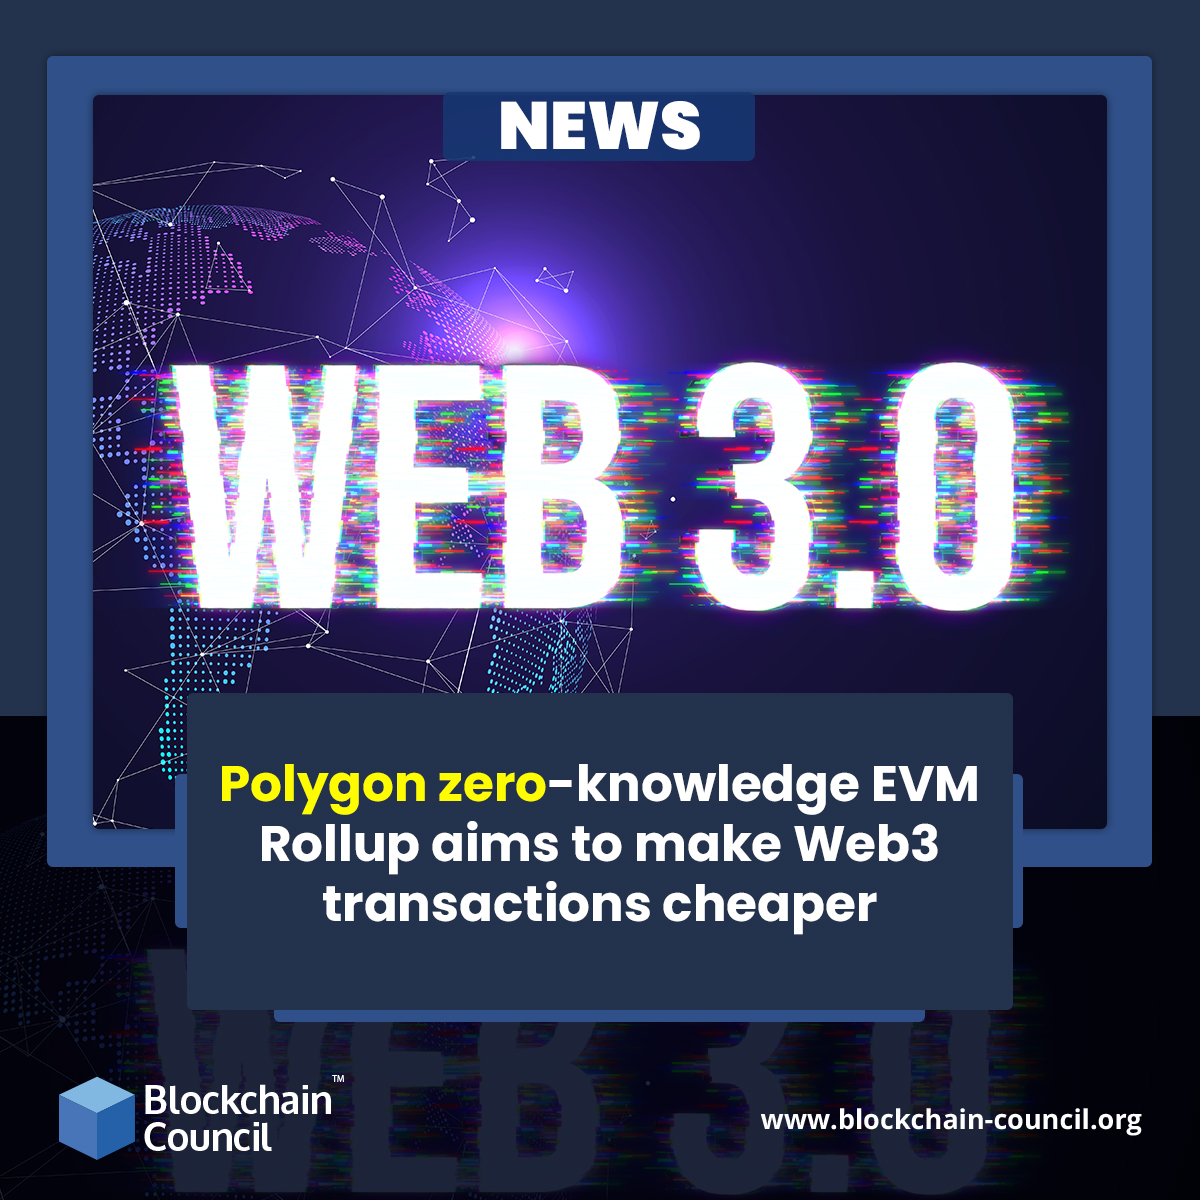 Polygon zero-knowledge EVM Rollup aims to make Web3 transactions cheaper